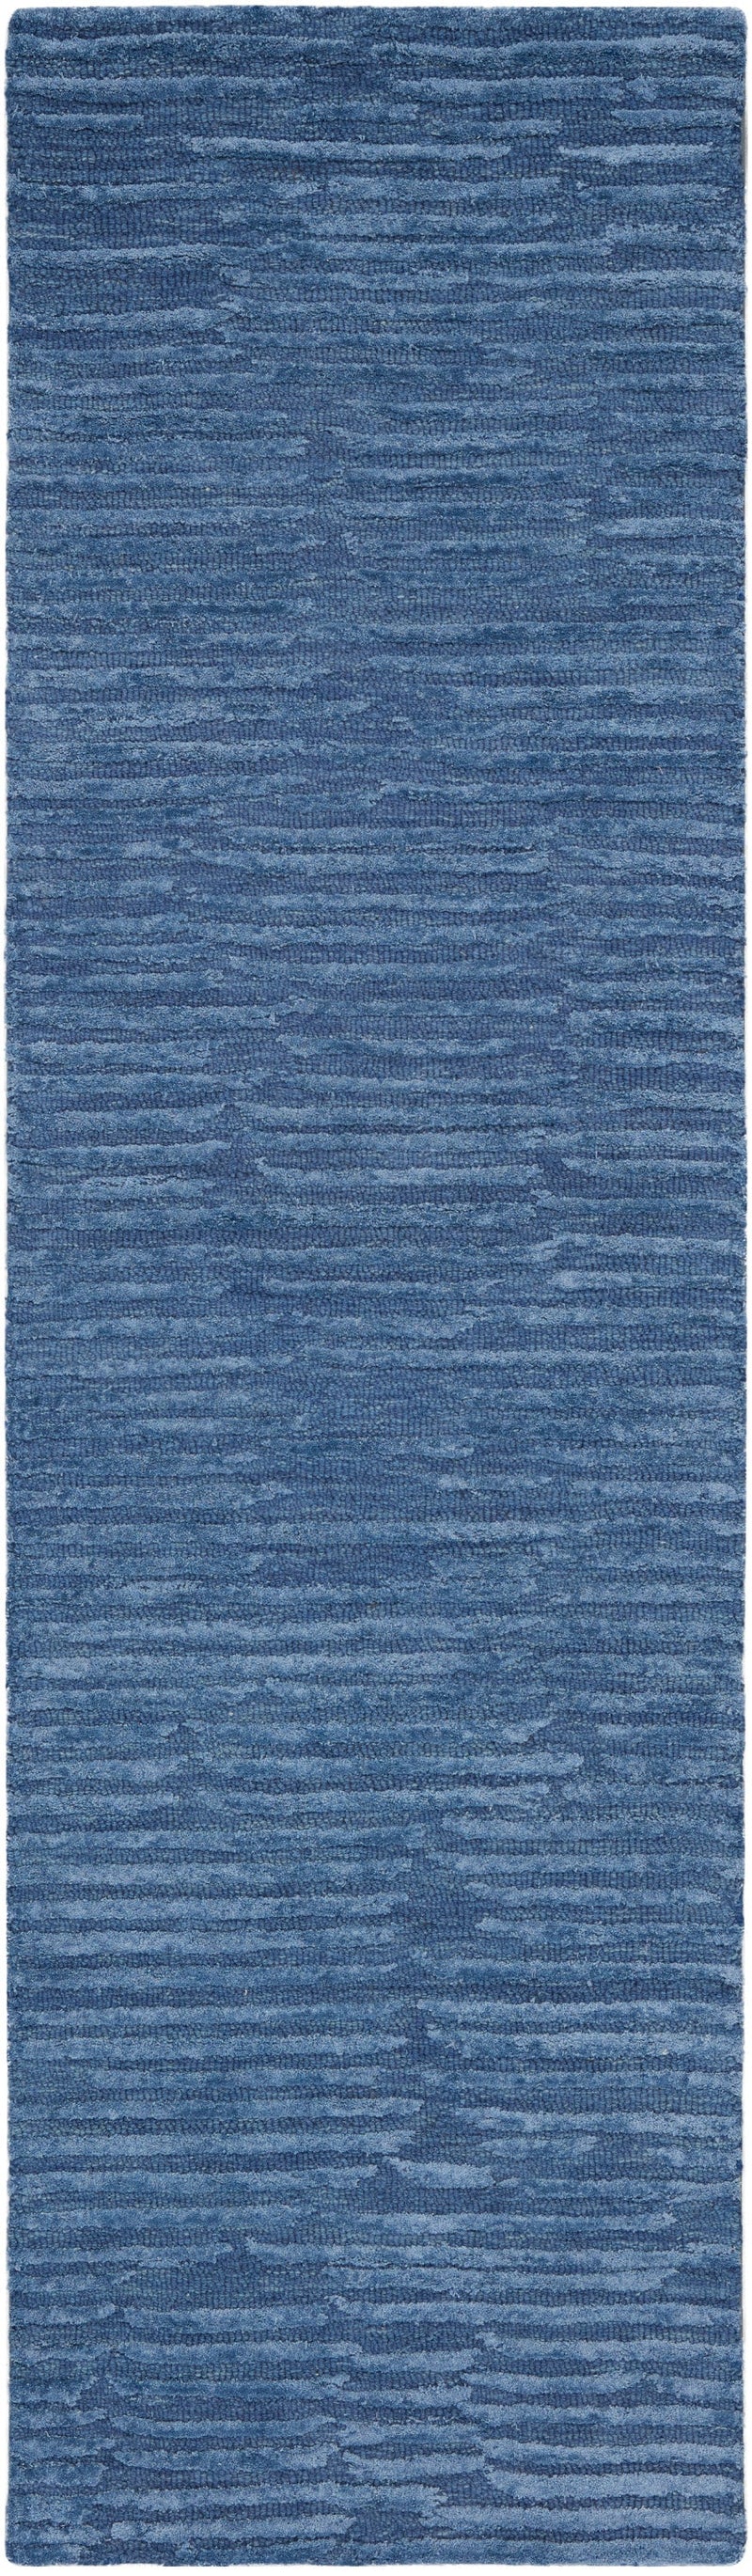 media image for ck010 linear handmade blue rug by nourison 99446880116 redo 2 278